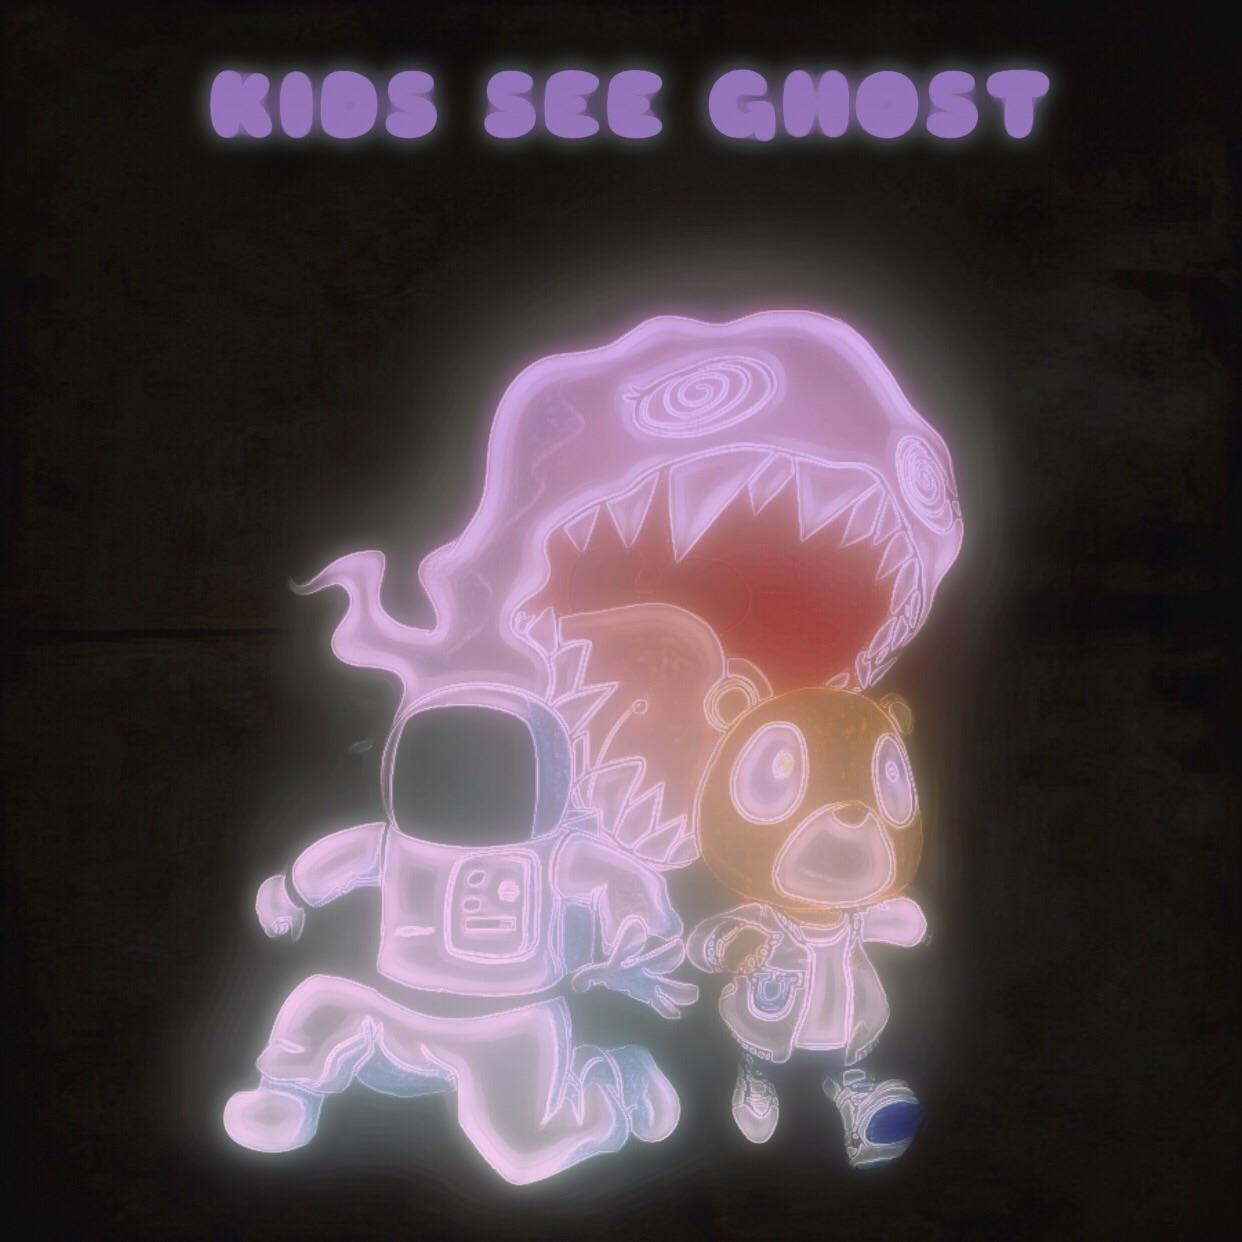 Kanye West & Kid Cudi See Ghost